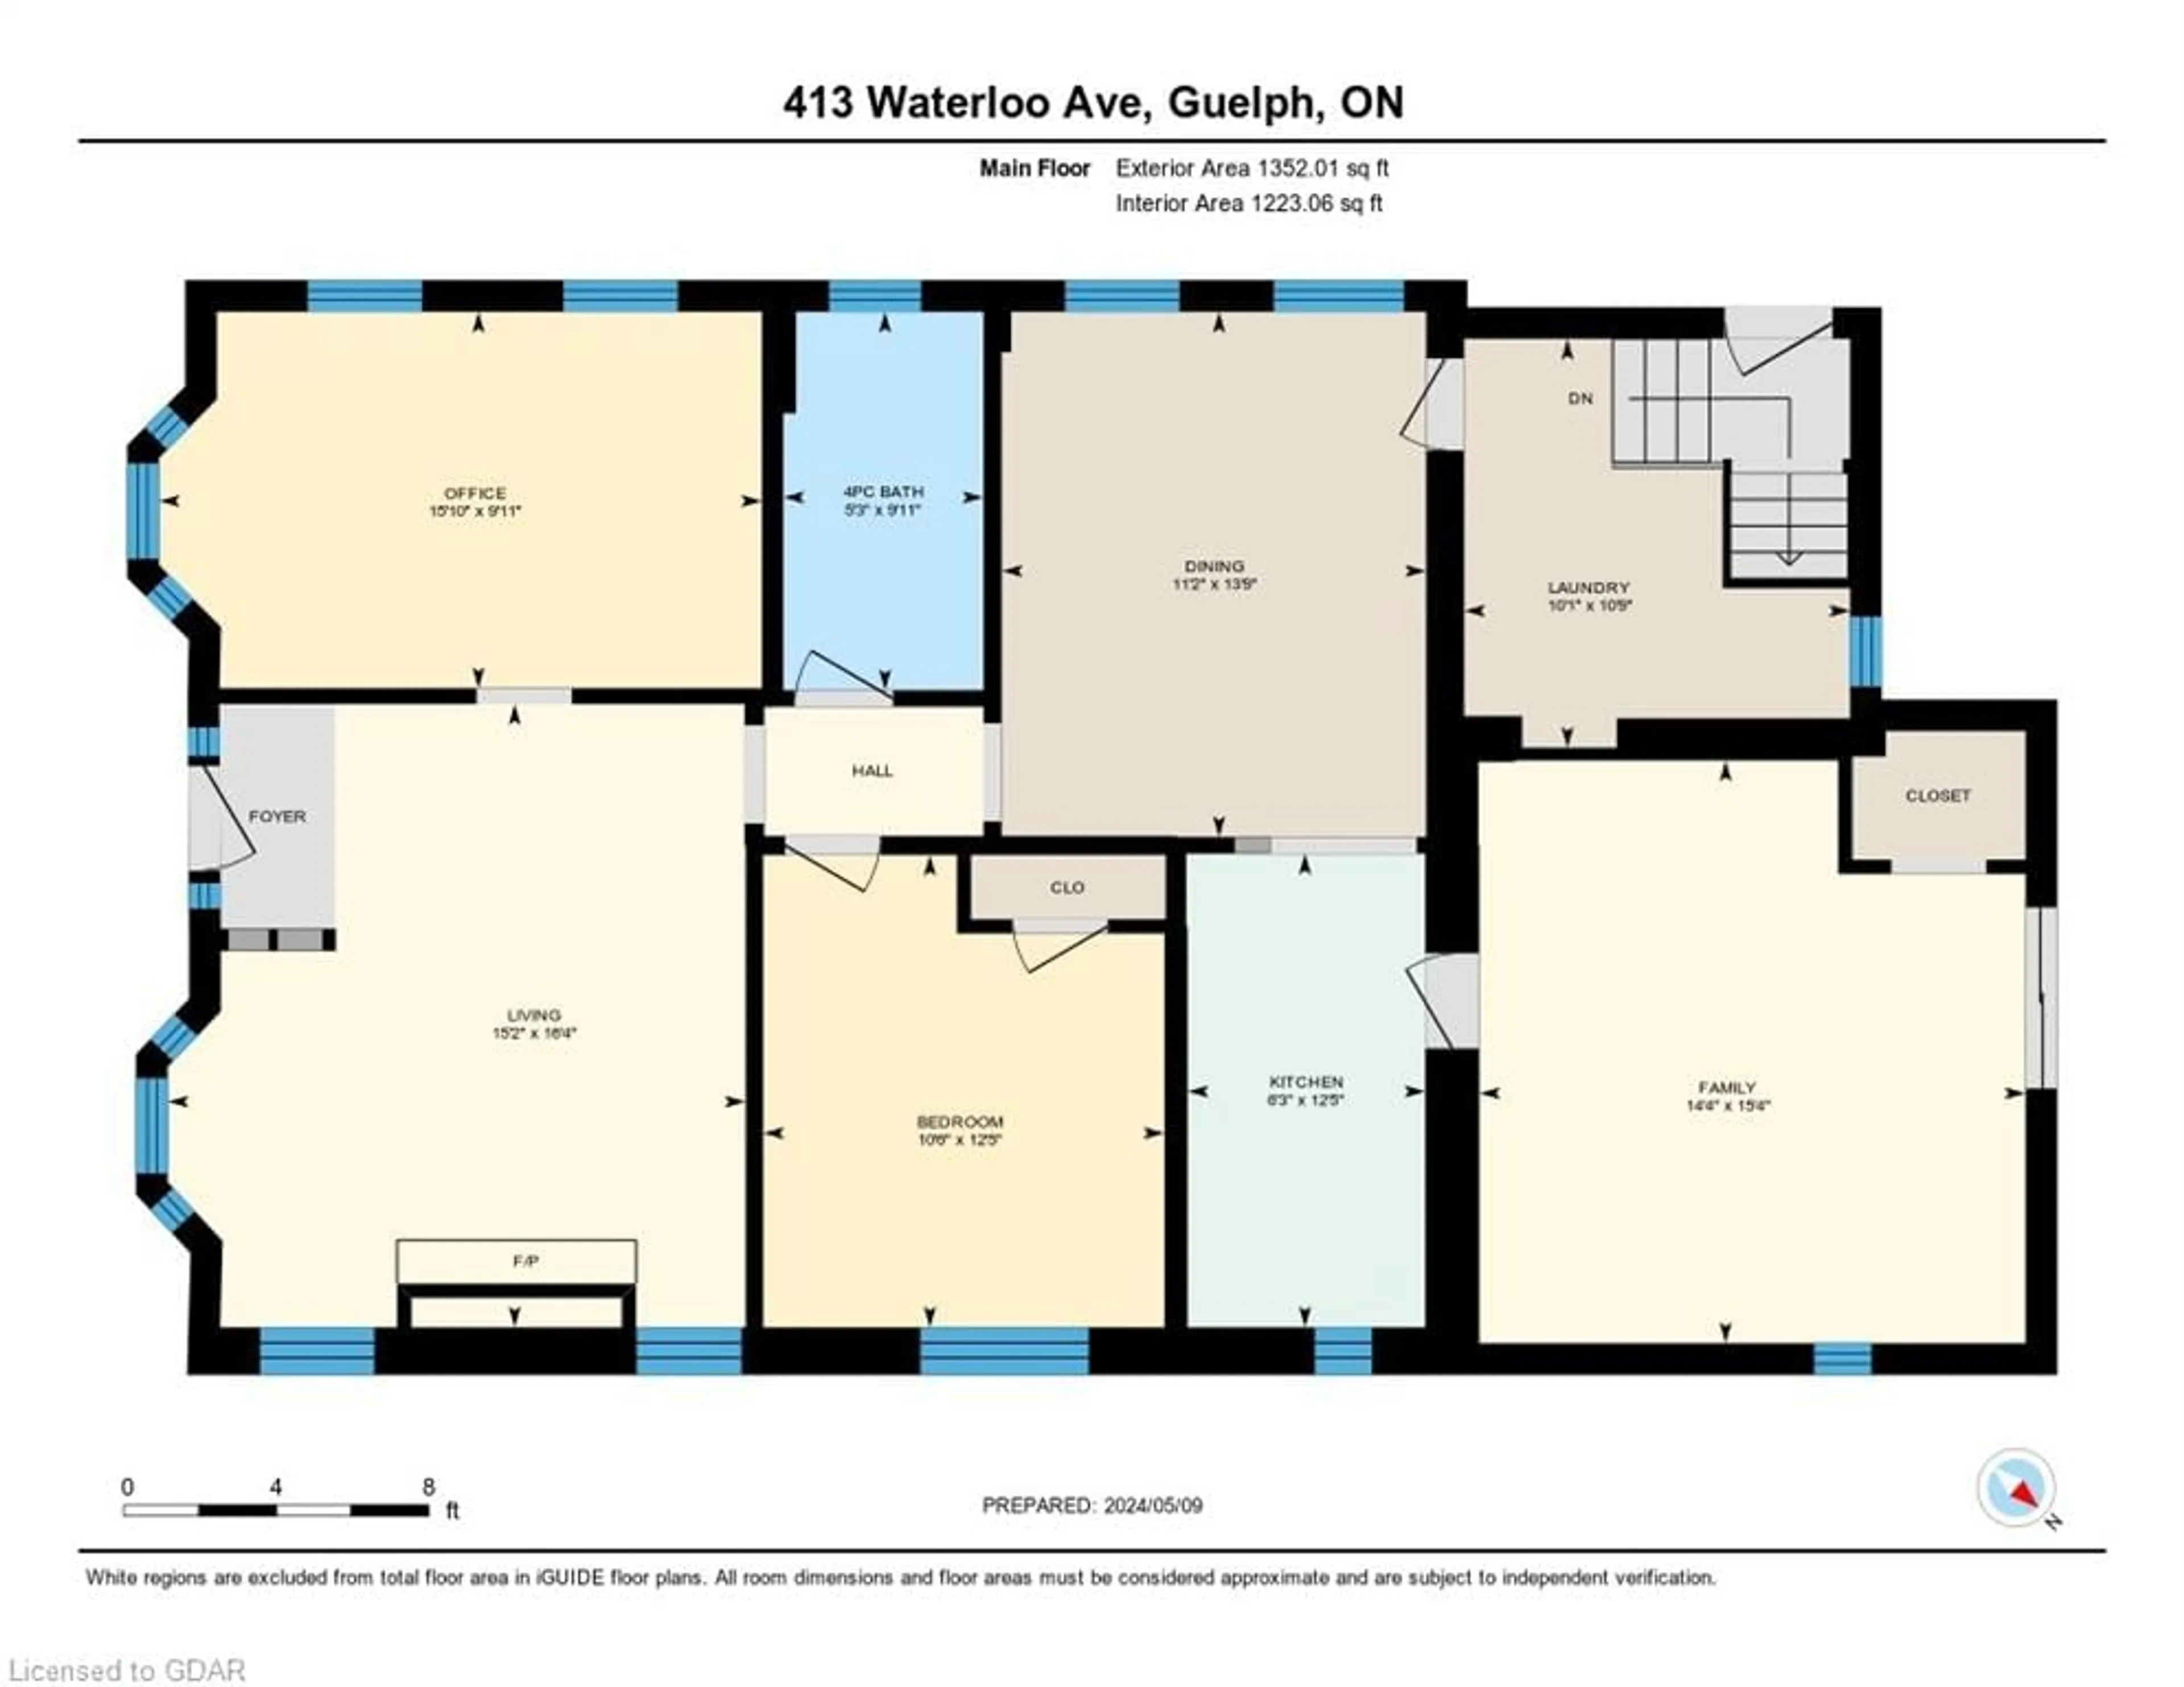 Floor plan for 413 Waterloo Ave, Guelph Ontario N1H 3K3